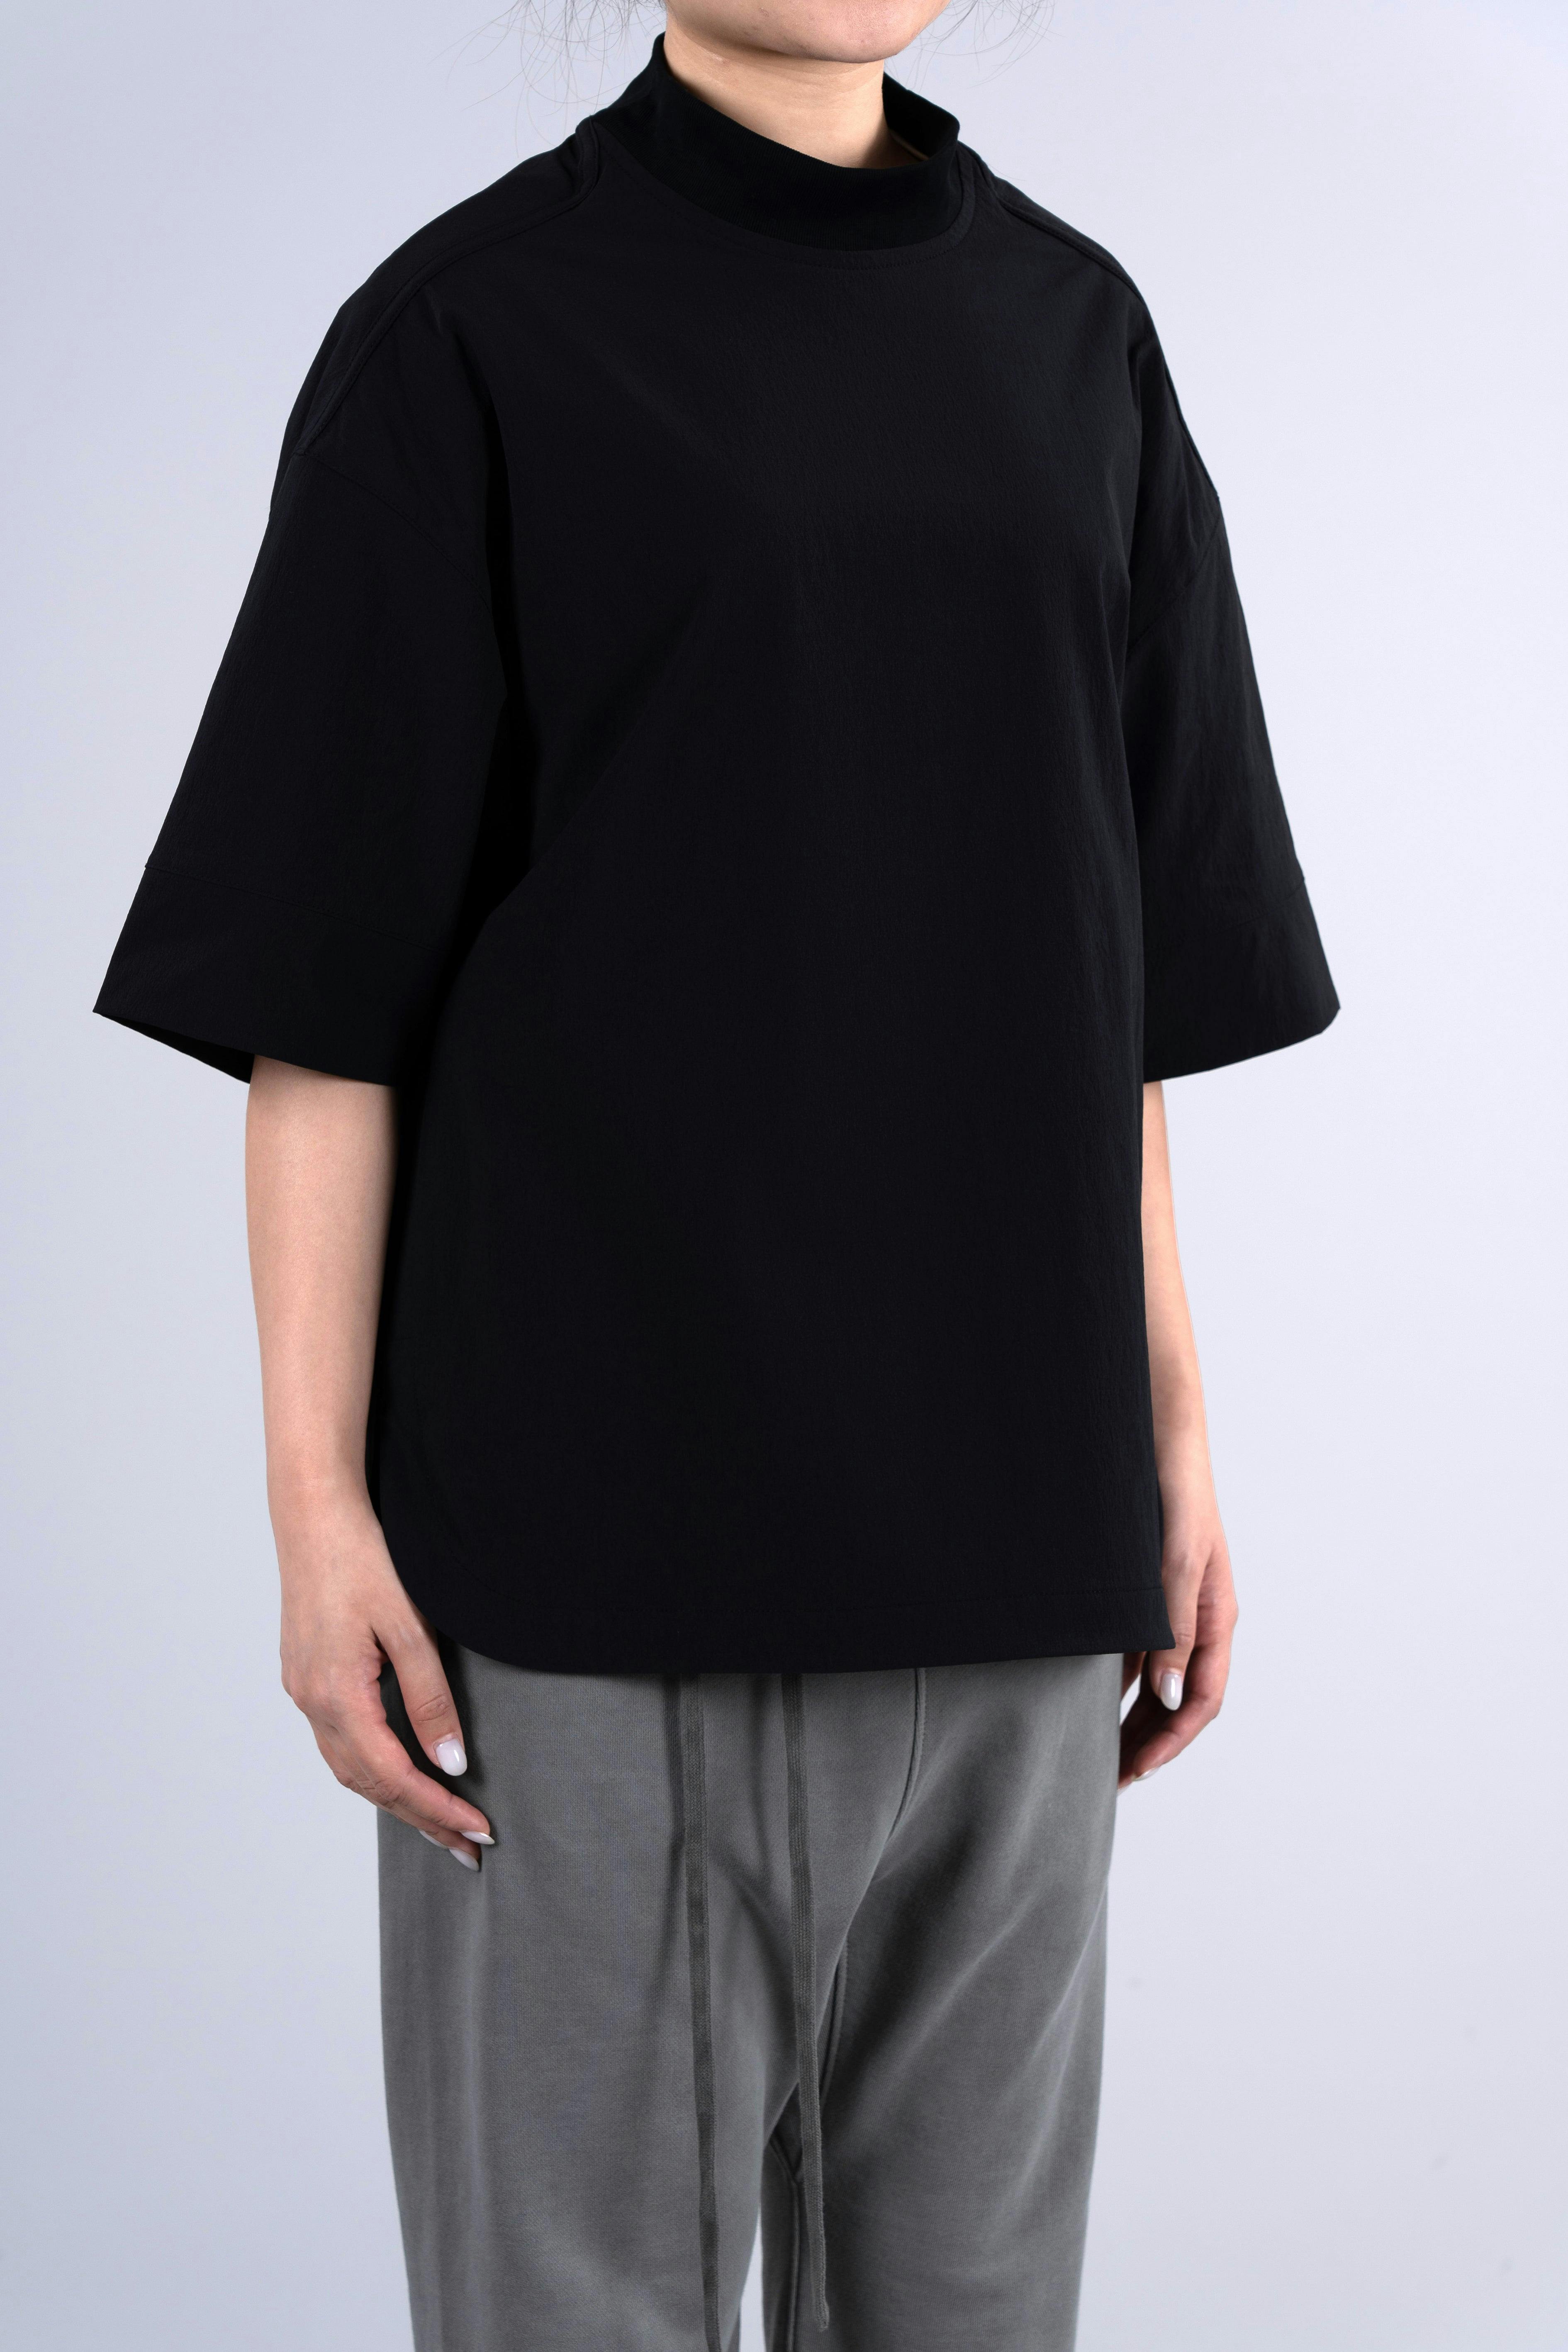 ˝INVERSE˝ Woven T-Shirt - Plain Black